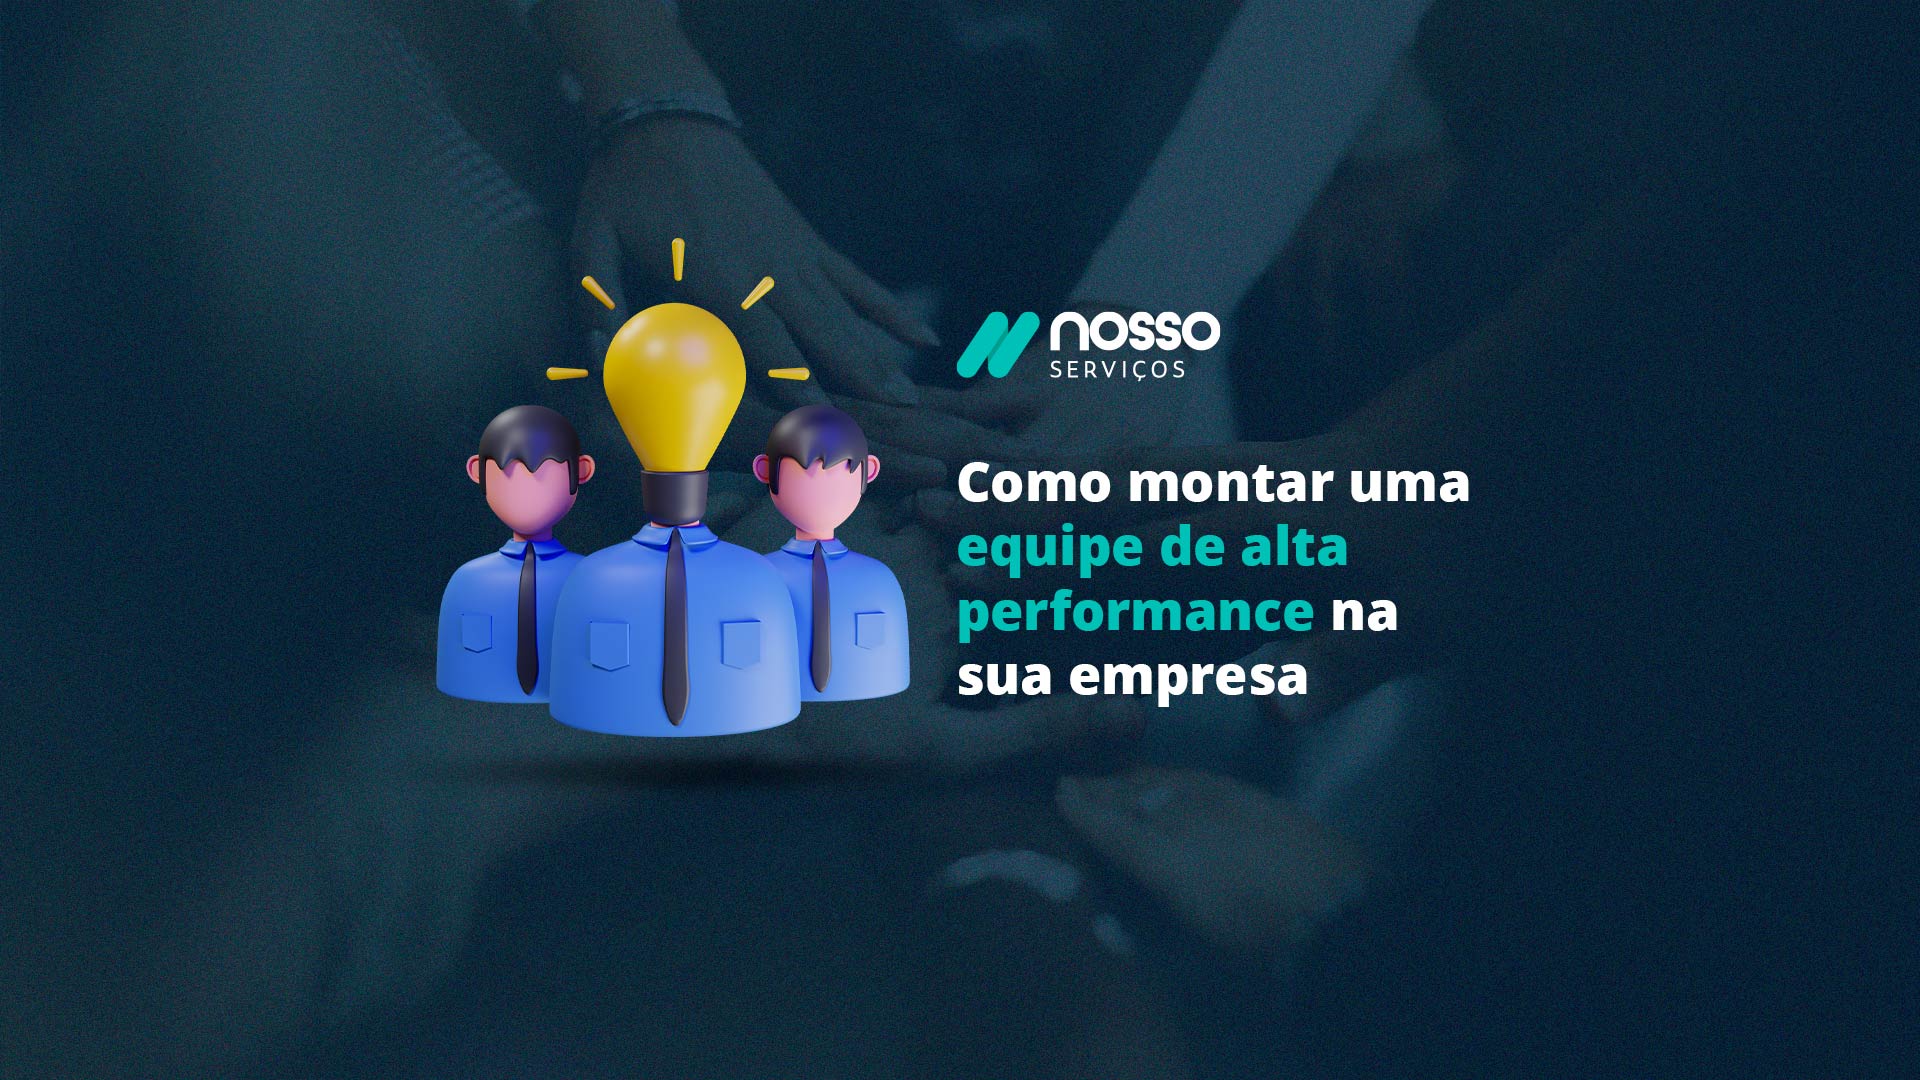 Banner azul com um fundo em desfoque de várias mãos unidas. À frente da imagem, aparece a frase: "Como montar uma equipe de alta performance na sua empresa".